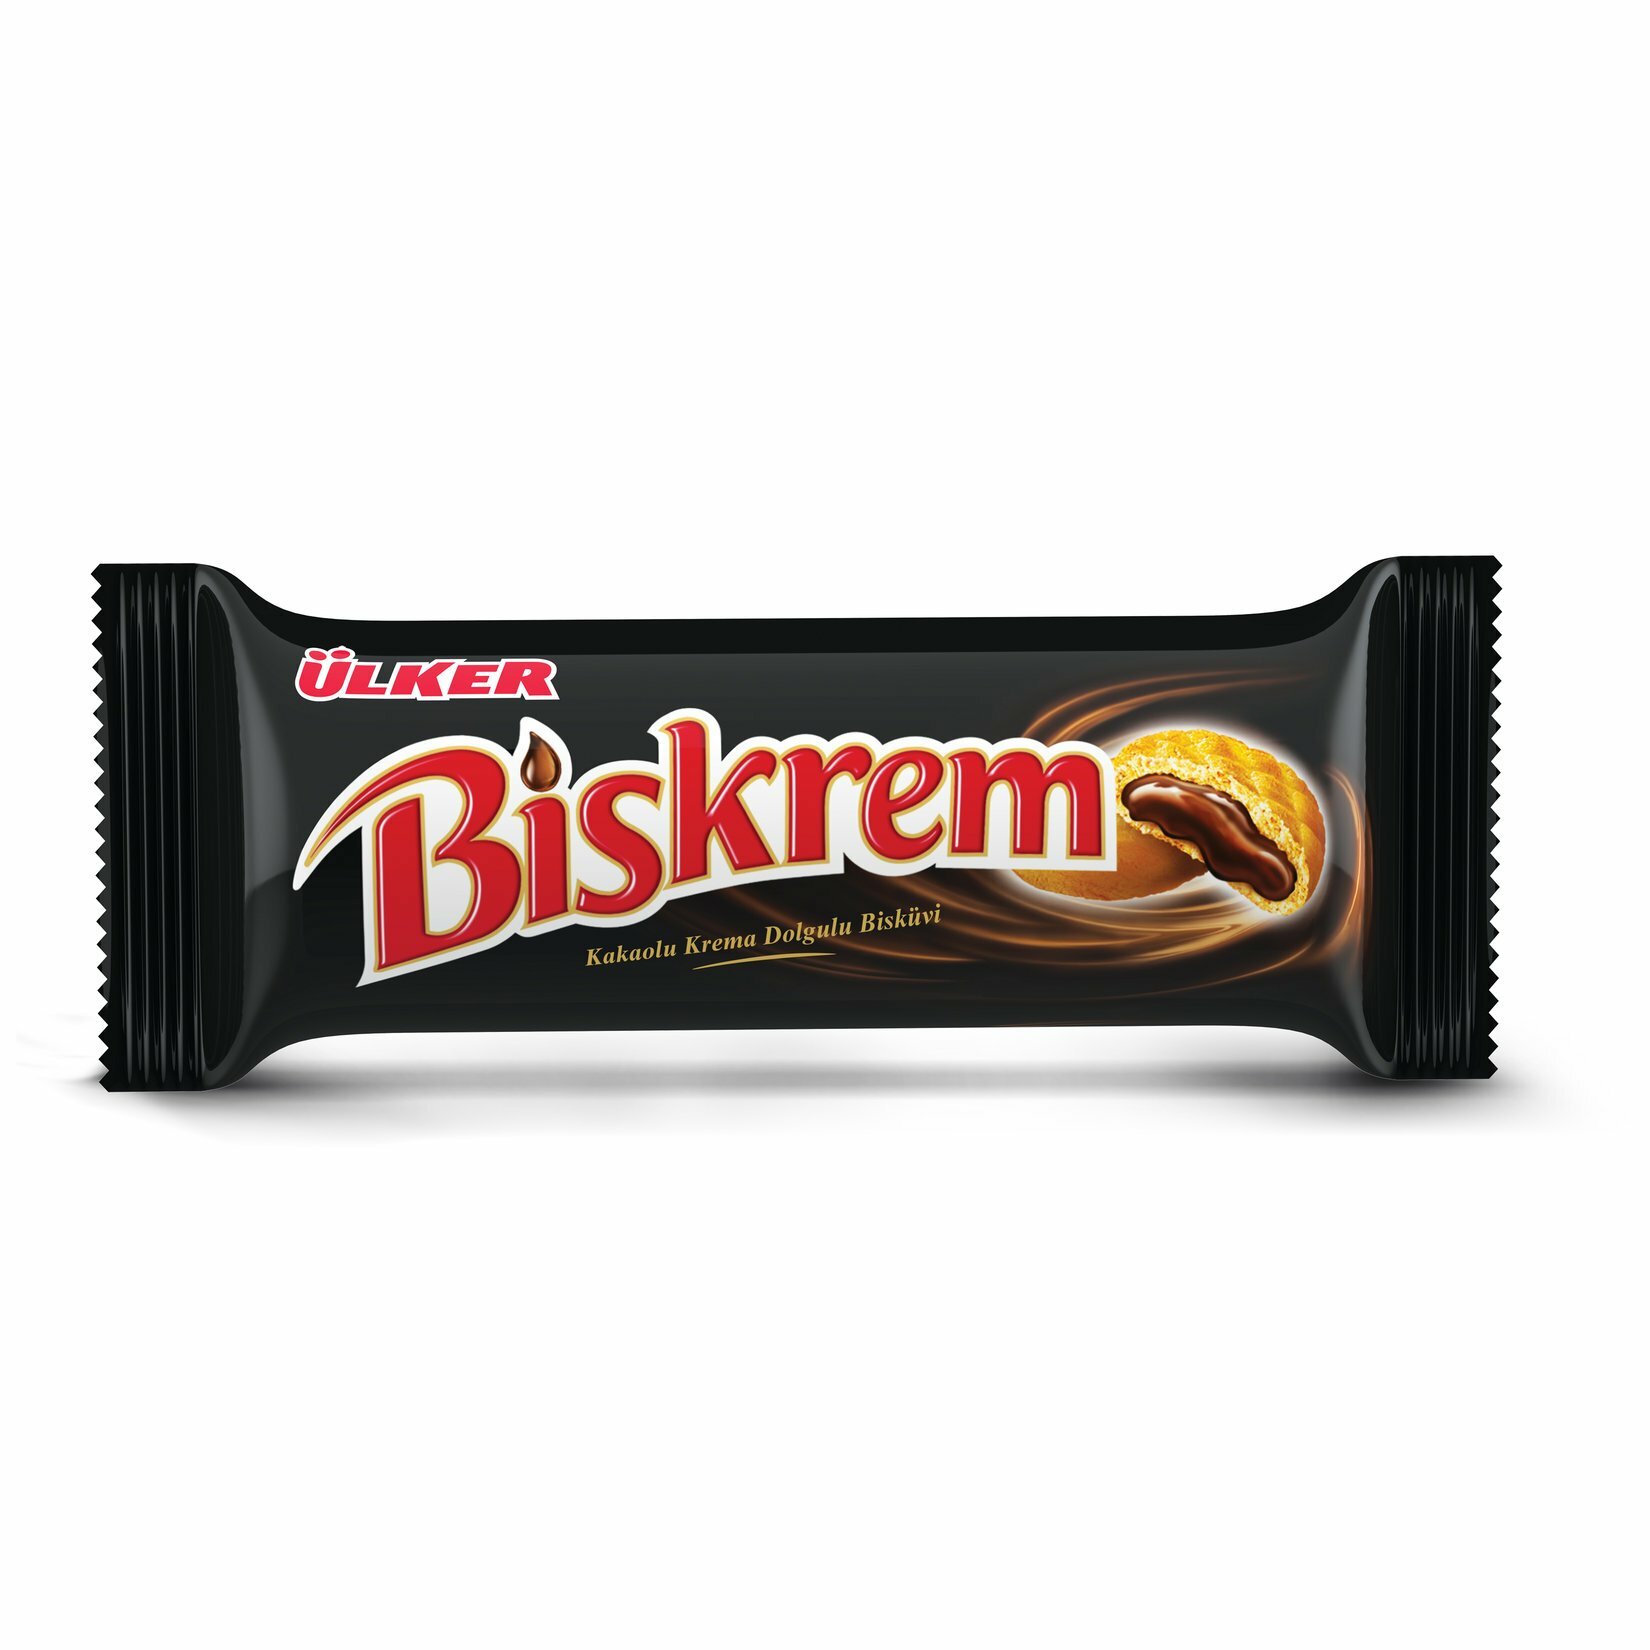 Печенье с какао крем начинкой, Ulker Biskrem, 100гр